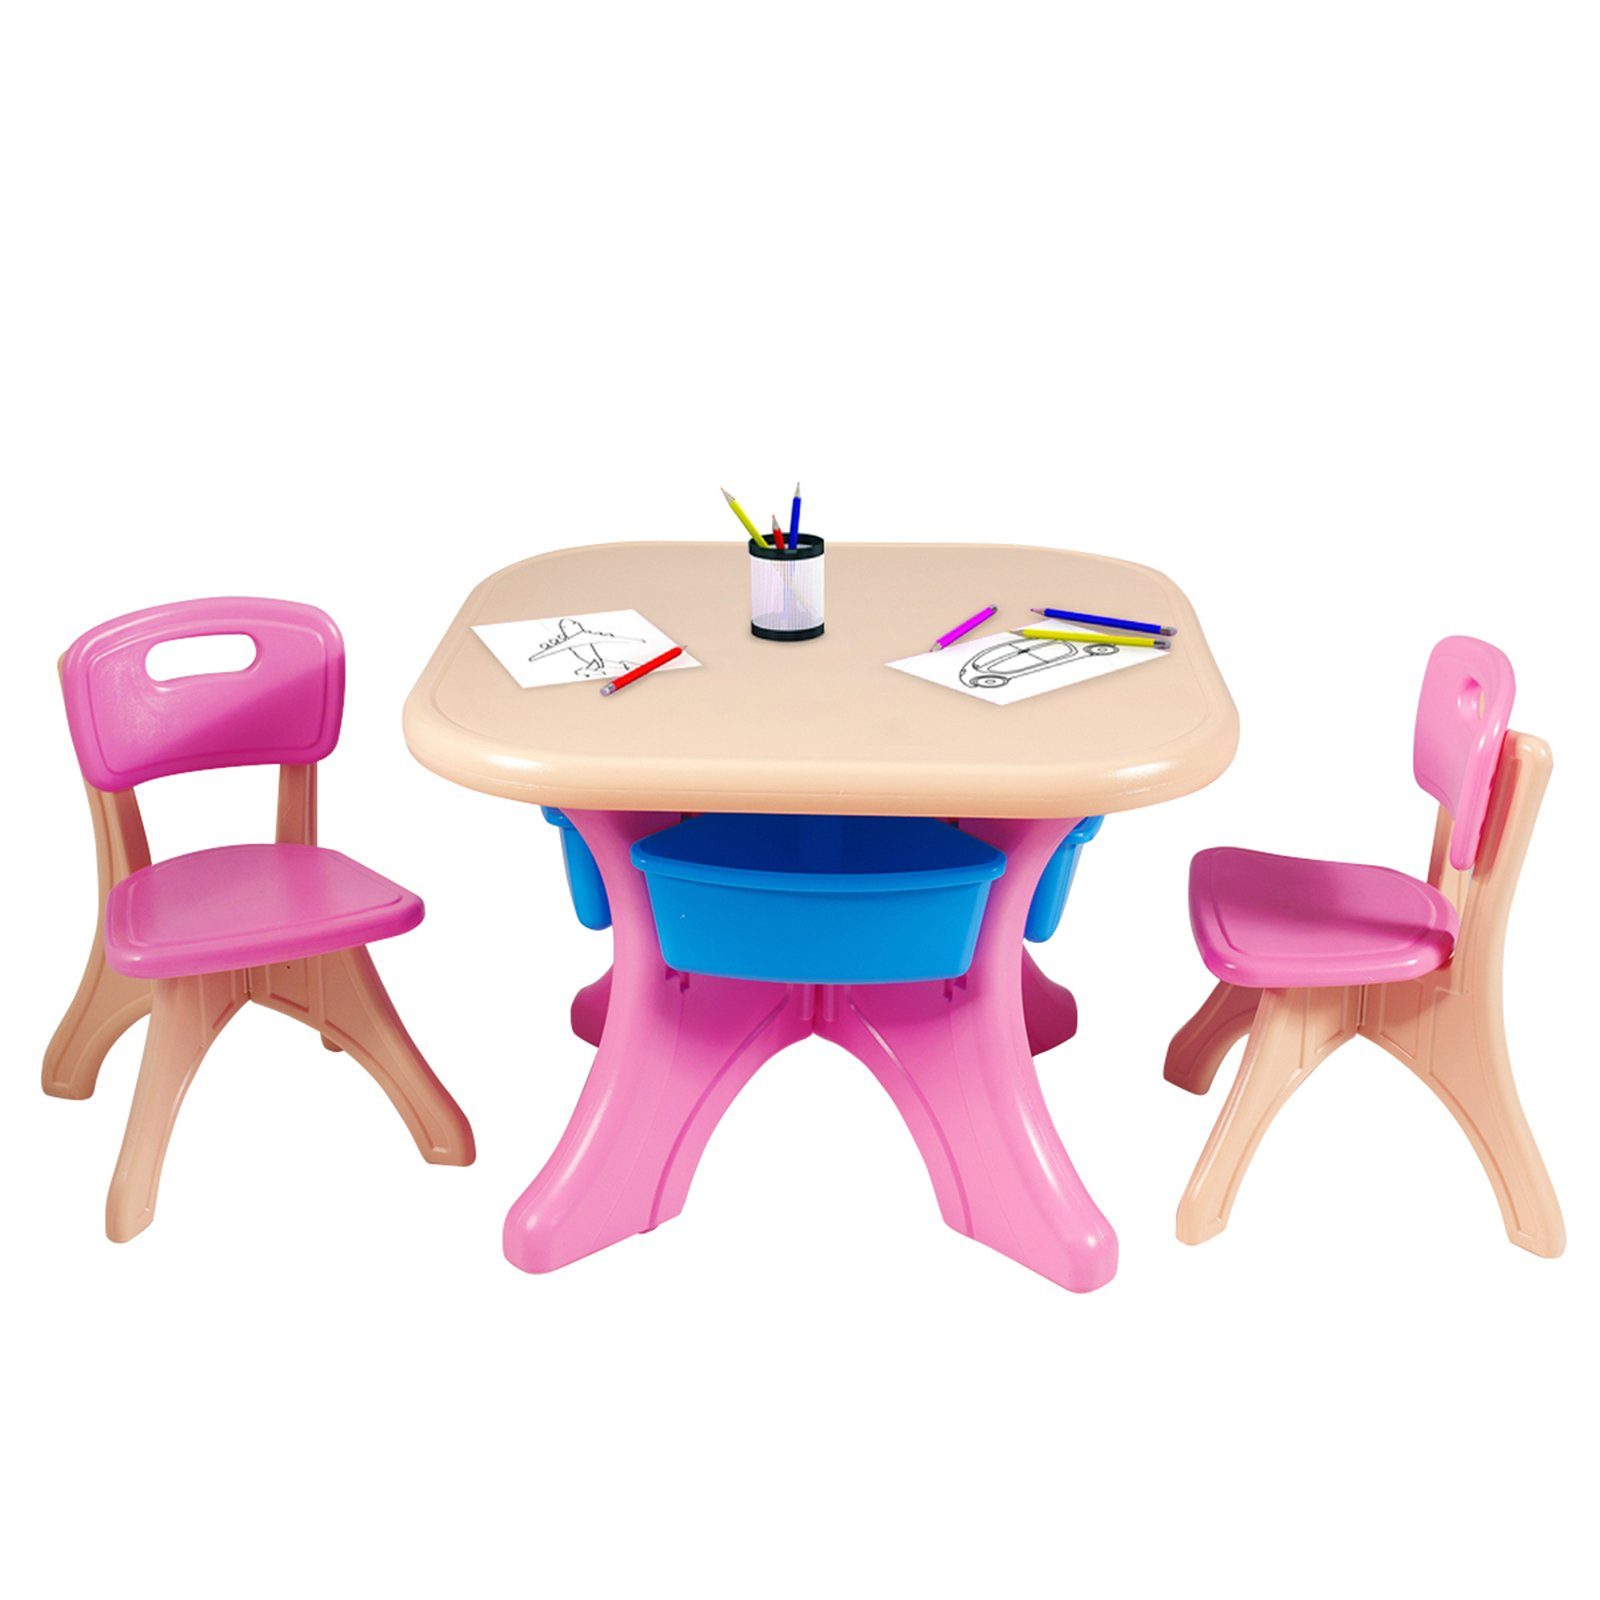 mit Kunststoff 2 Stauraum, Stühlen&Kindertisch, Rosa COSTWAY Kindersitzgruppe, mit